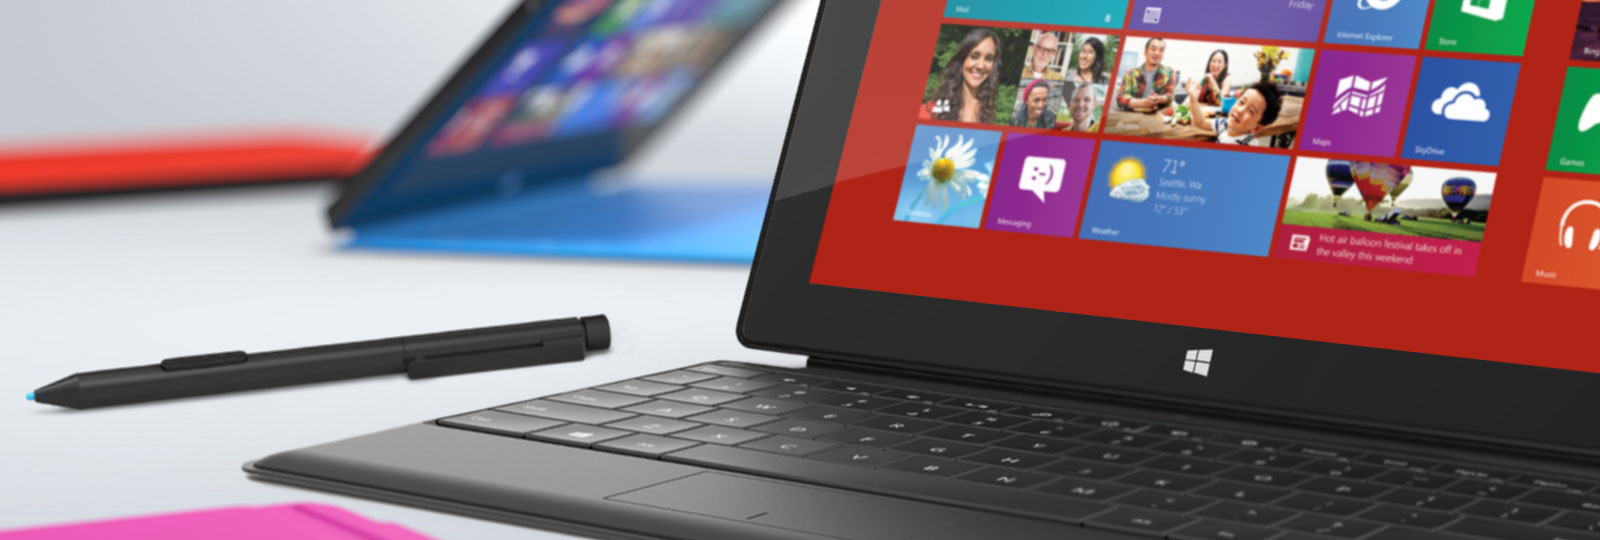 Microsoft-Surface-Pro1